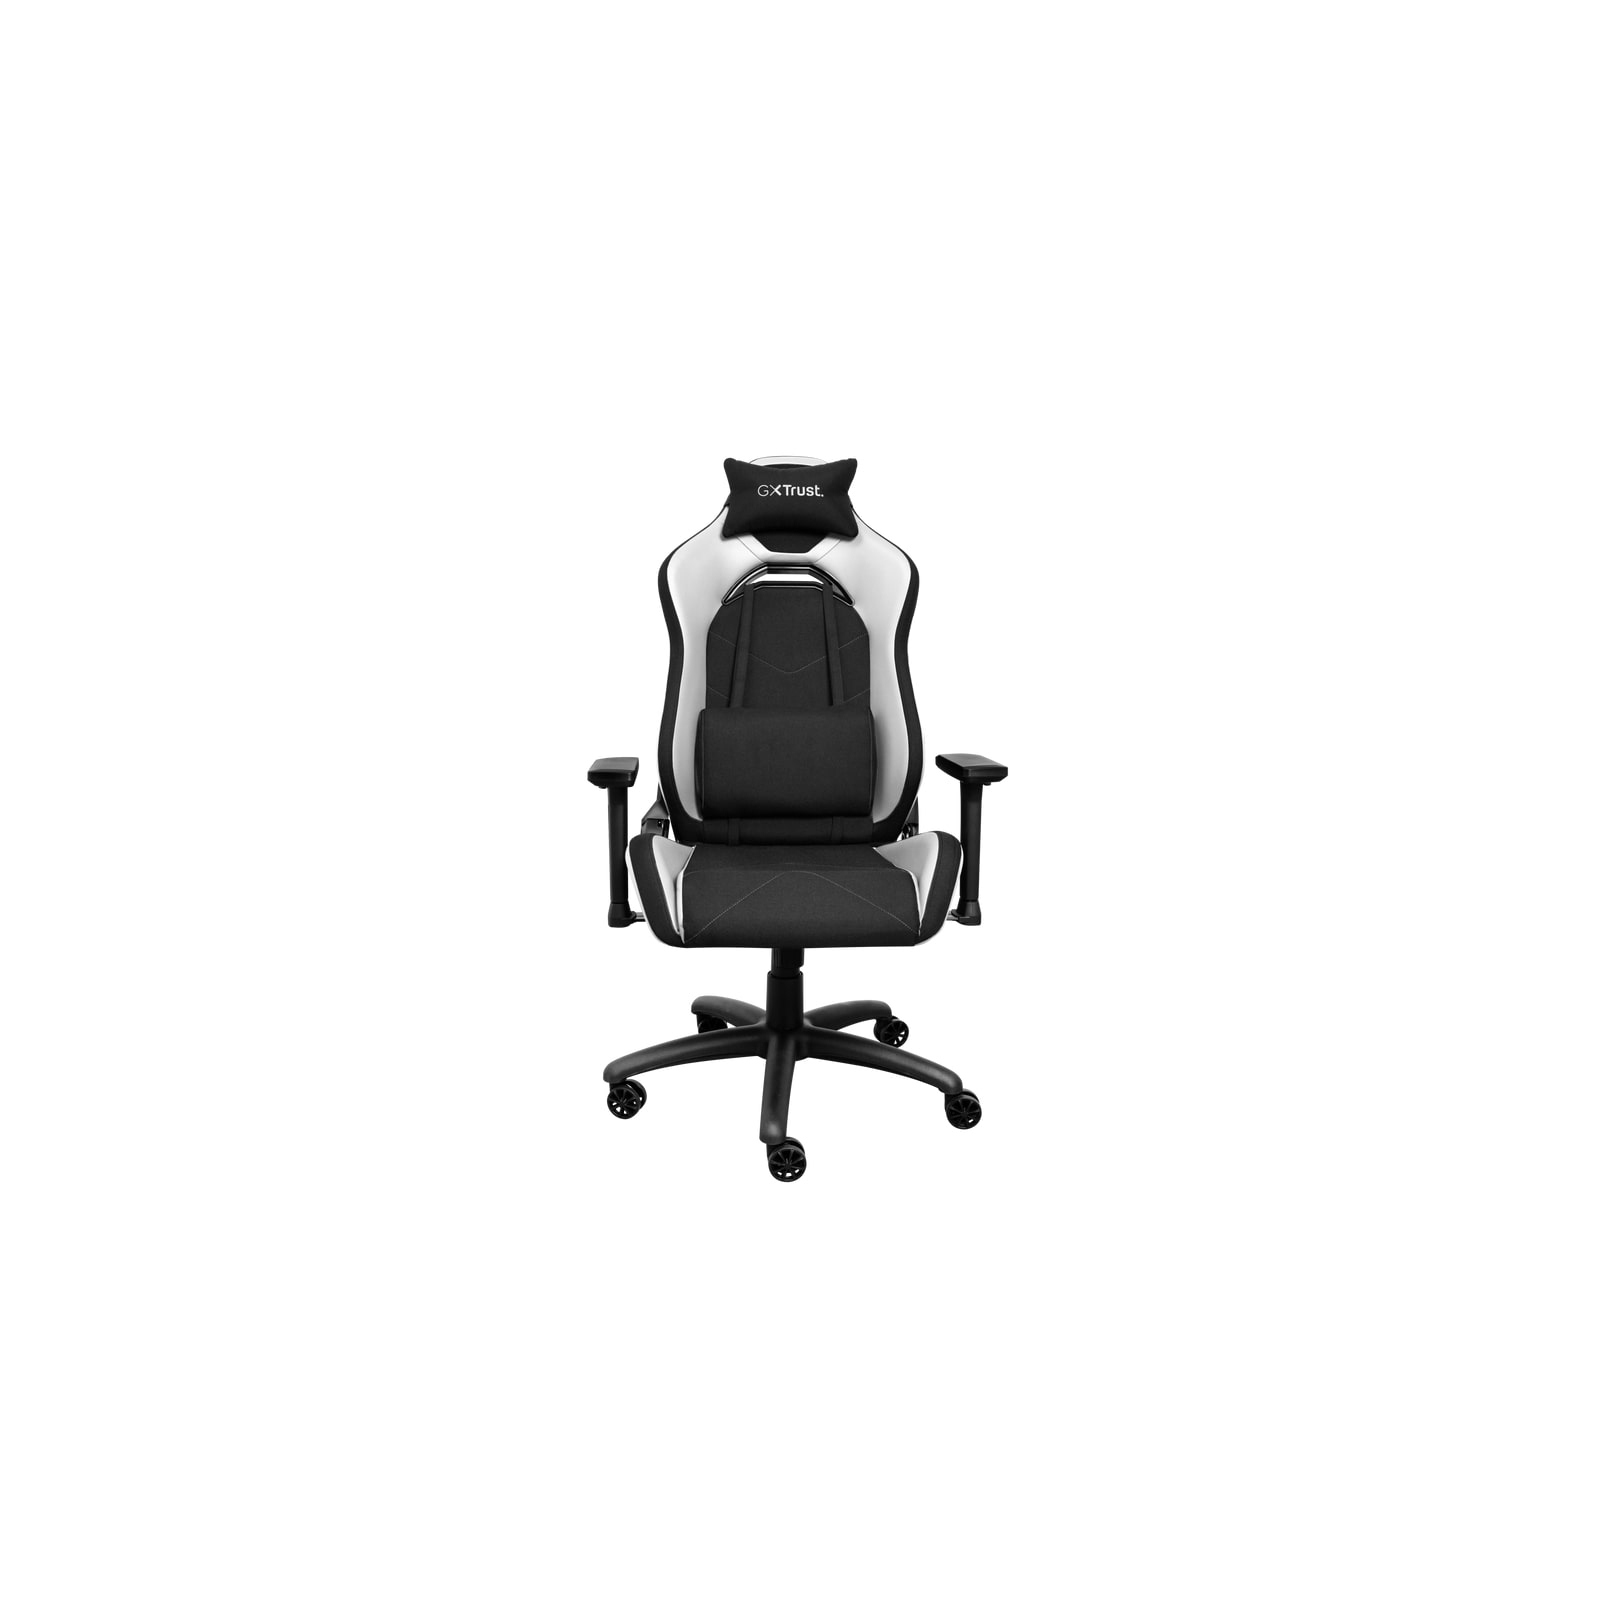 Крісло ігрове Trust GXT714 Ruya Eco Black (24908) зображення 3